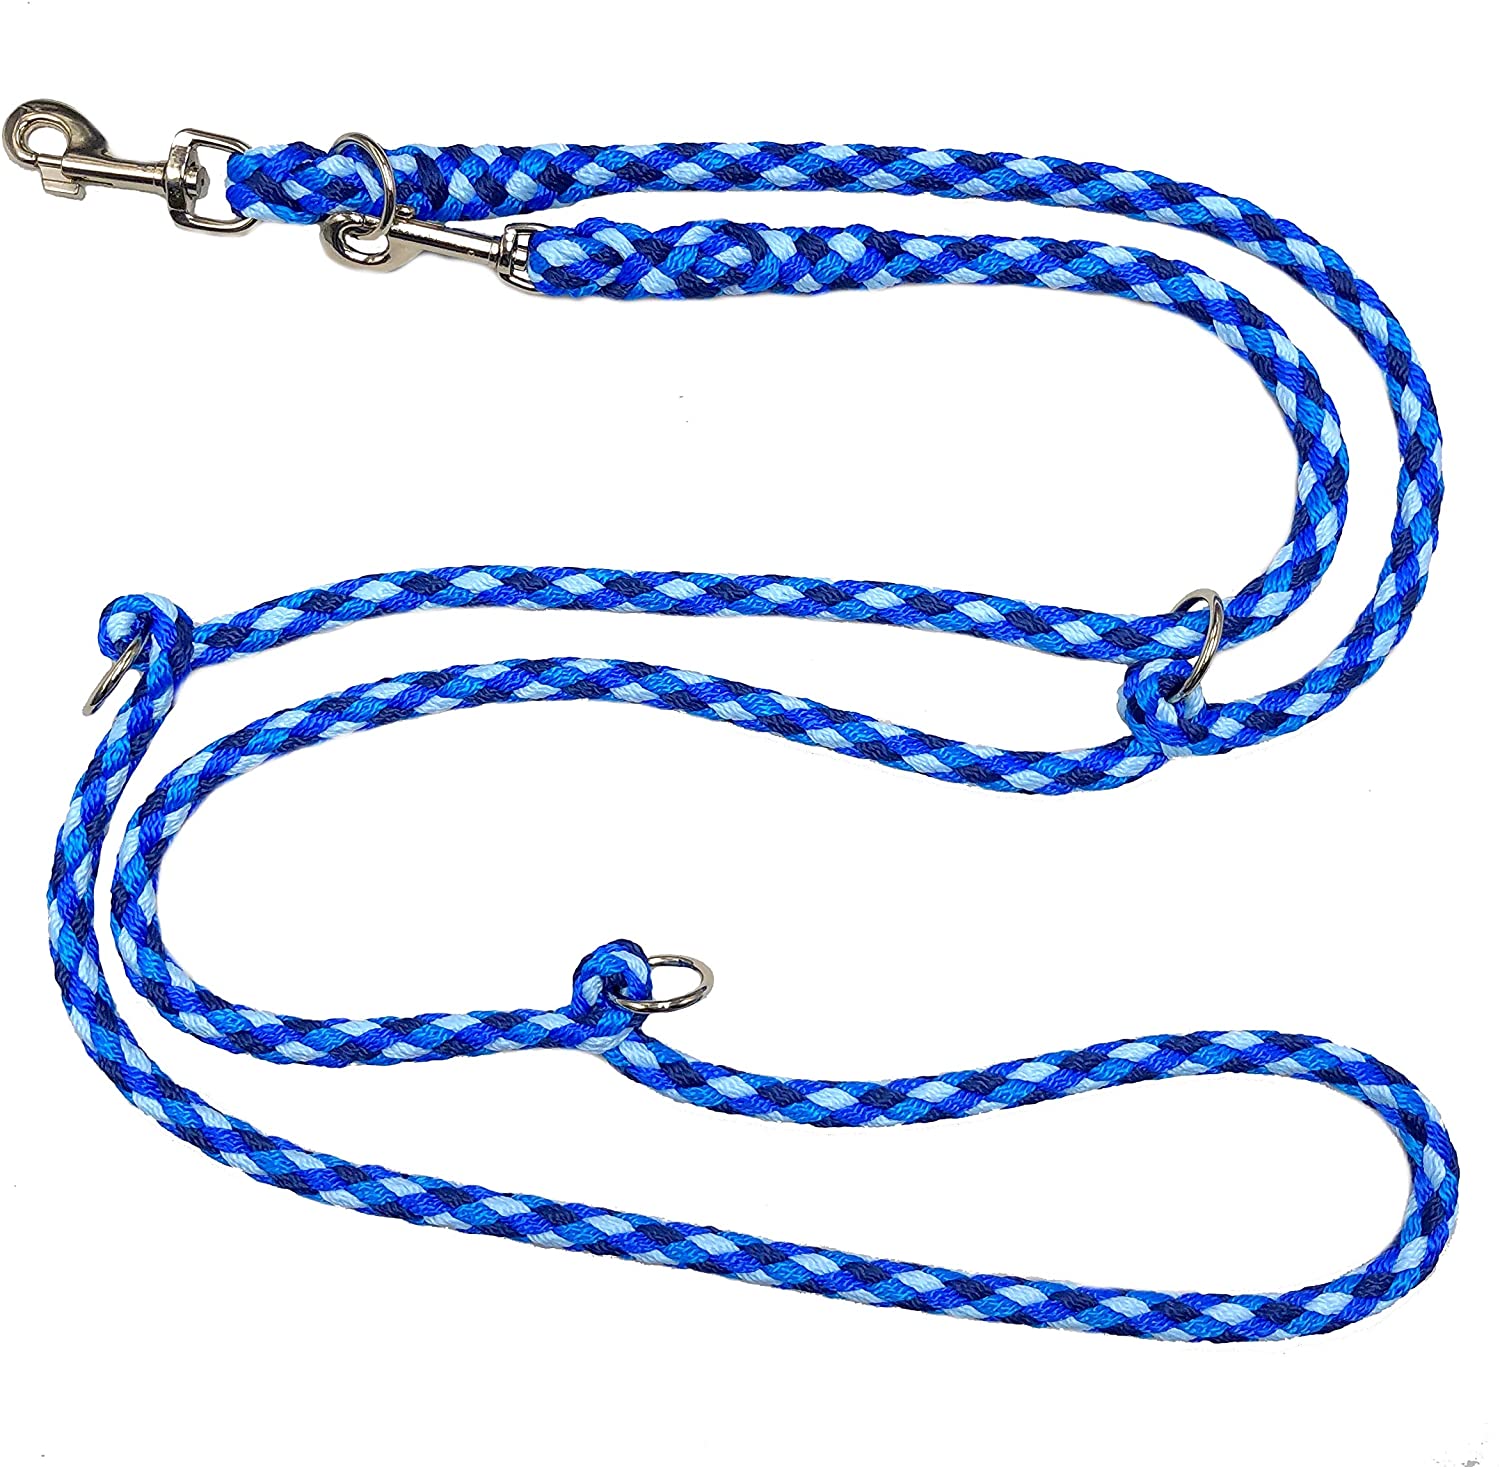  Perros cuerda doble cuerda Ocean 2,00 m y 2,40 m 3 Compartimento – 2,80 m 4 posiciones correa cuerda 